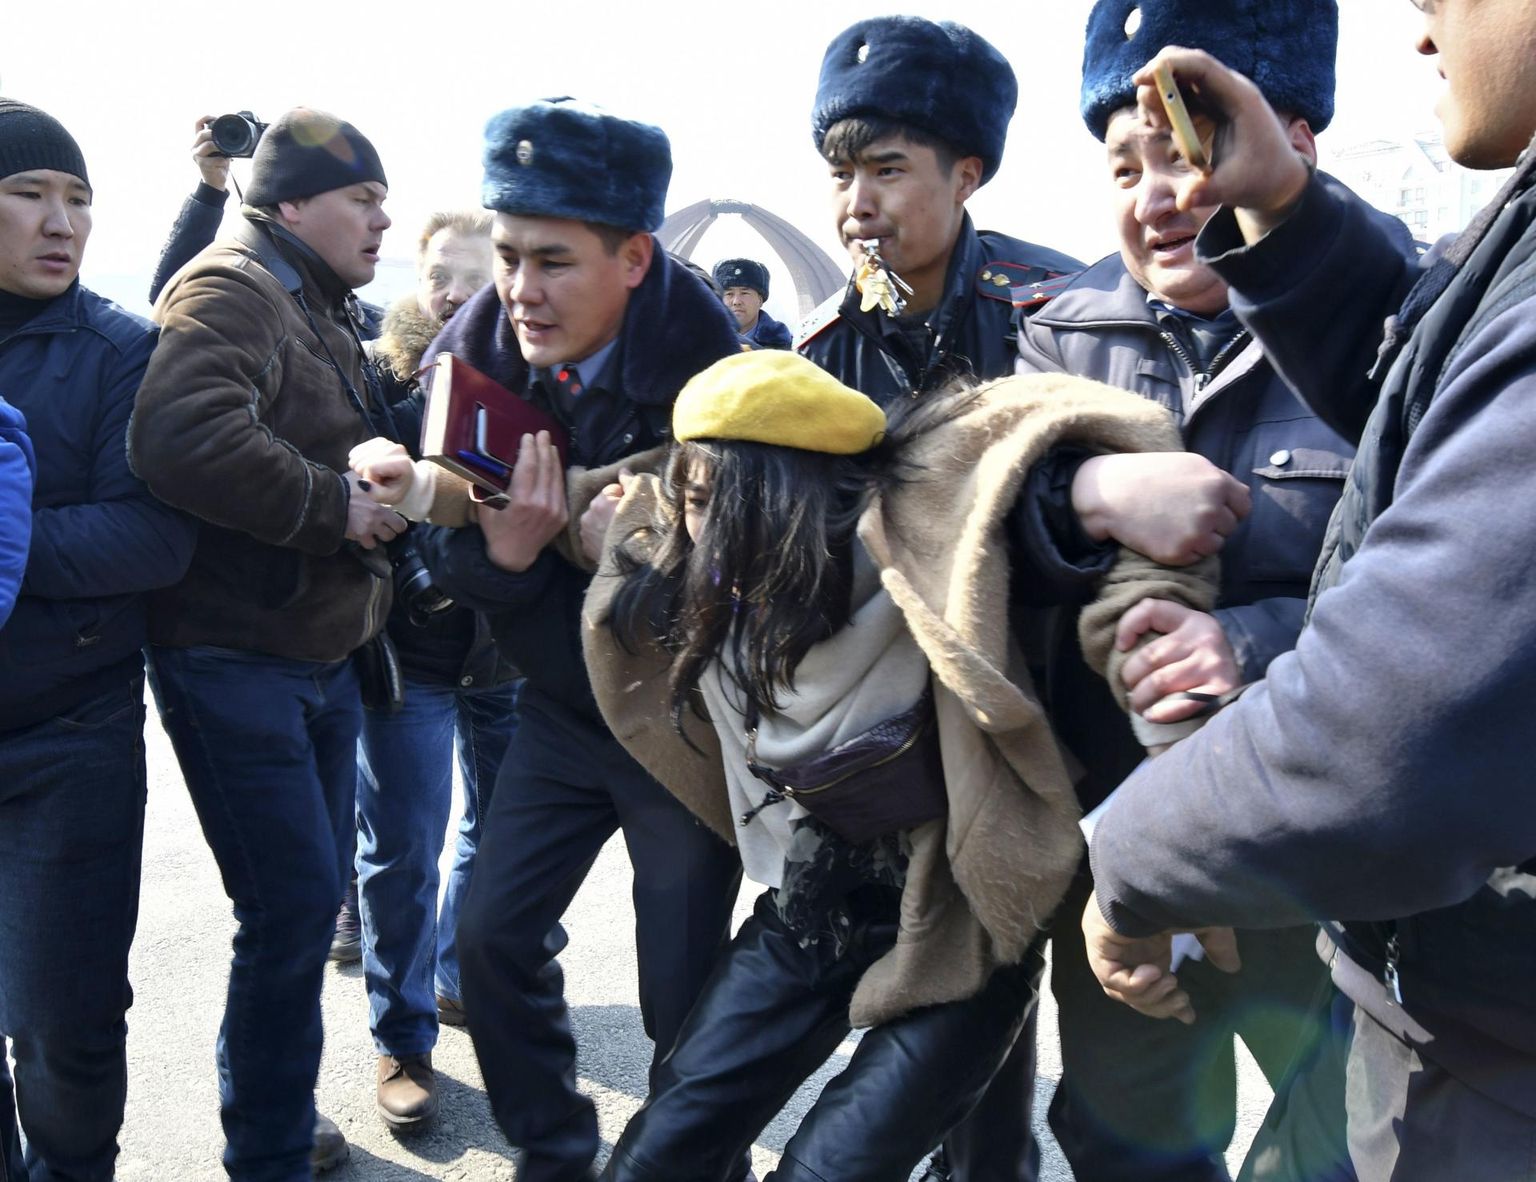 Kõrgõzstani politseinikud vahistasid Biškekis naistepäeva meeleavaldusel mitukümmend naiste õiguste eest seisnud aktivisti. 